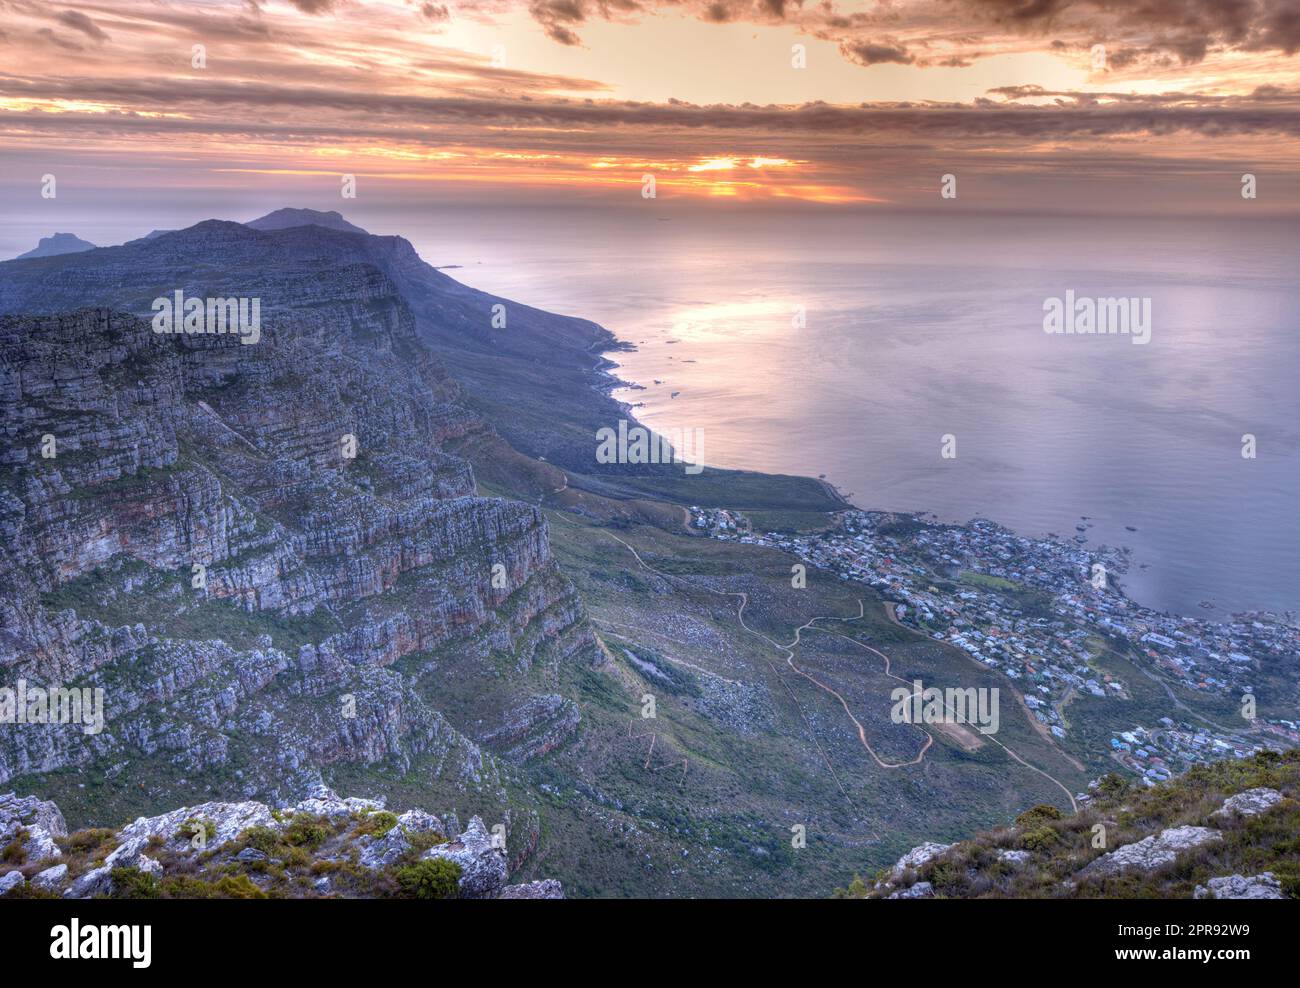 Wunderschöner Blick auf ein Wahrzeichen und berühmtes Reise- oder Urlaubsziel, um die Natur in Südafrika zu erkunden. Luftaufnahme auf das Meer und den Tafelberg an einem bewölkten Tag bei Sonnenuntergang mit Kopierbereich. Stockfoto